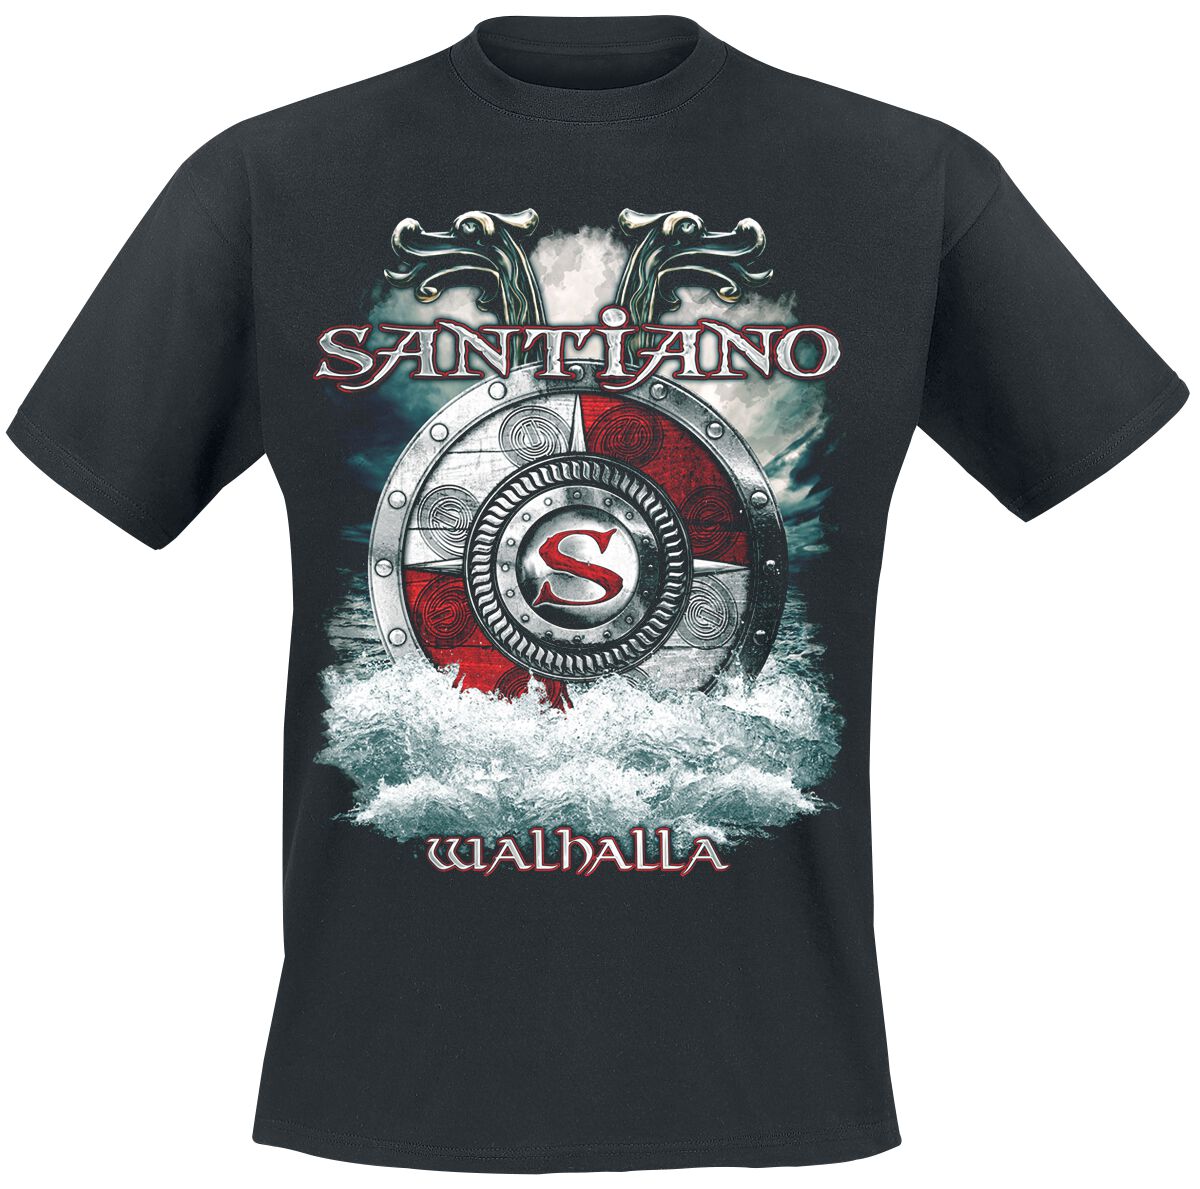 Santiano T-Shirt - Walhalla - M bis XXL - für Männer - Größe XL - schwarz  - Lizenziertes Merchandise!